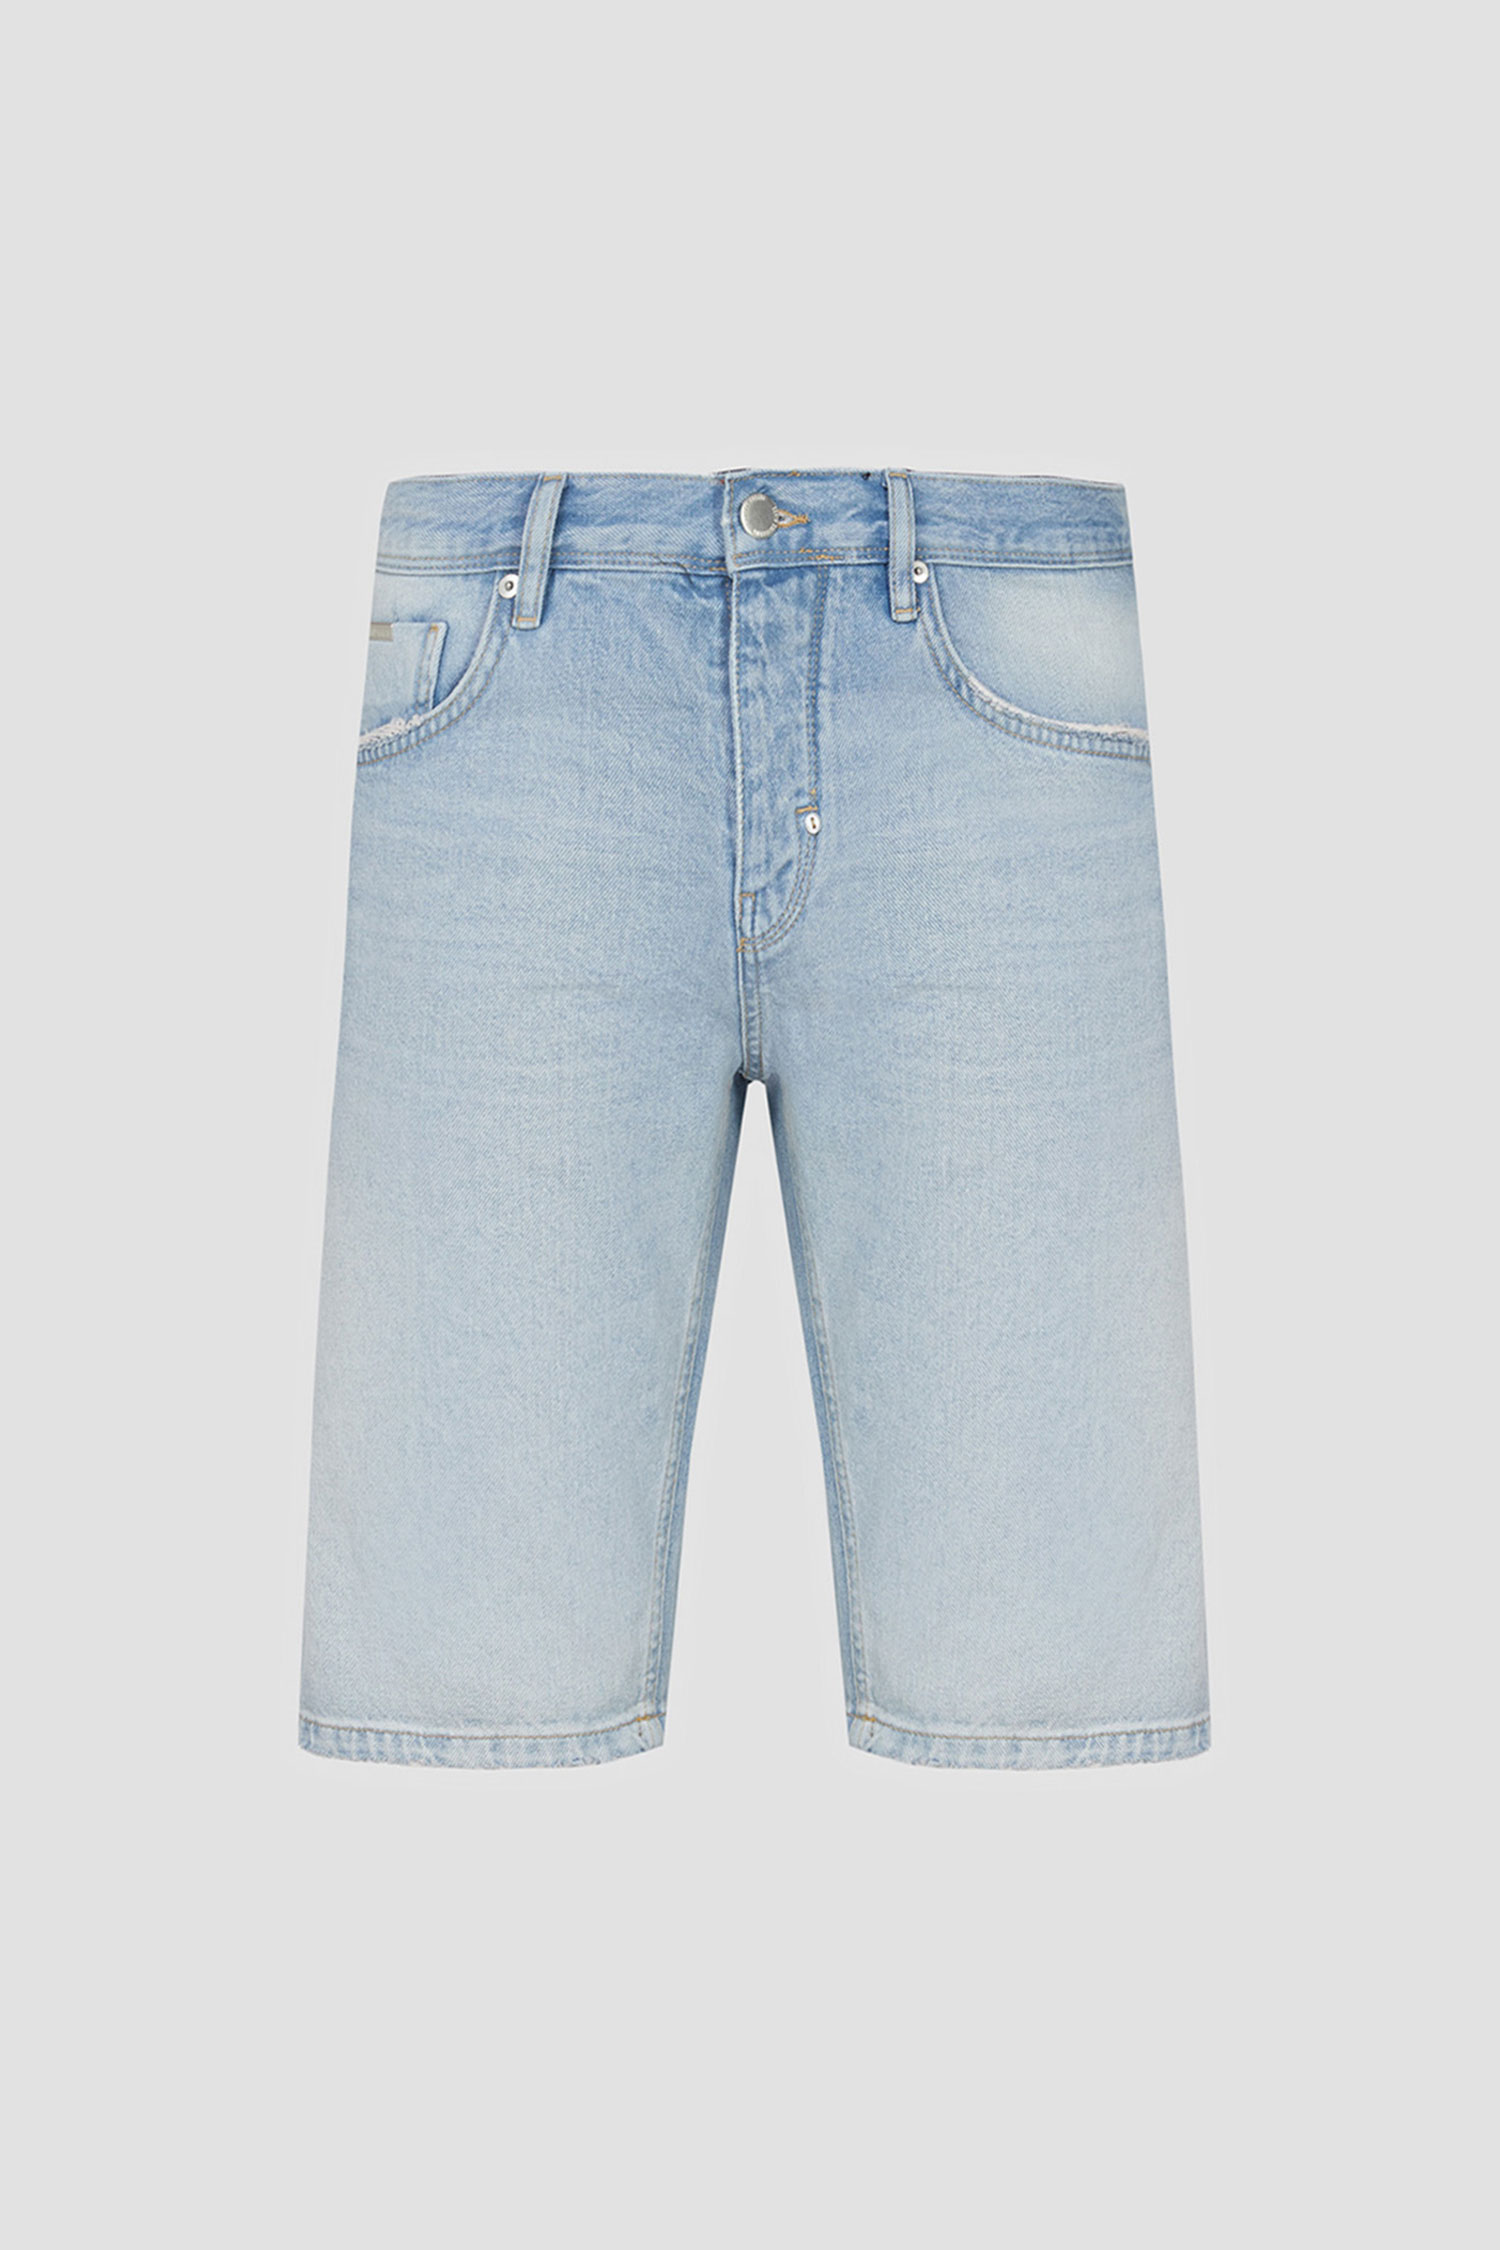 Мужские голубые джинсовые шорты Antony Morato MMDS00076.FA750461;7000